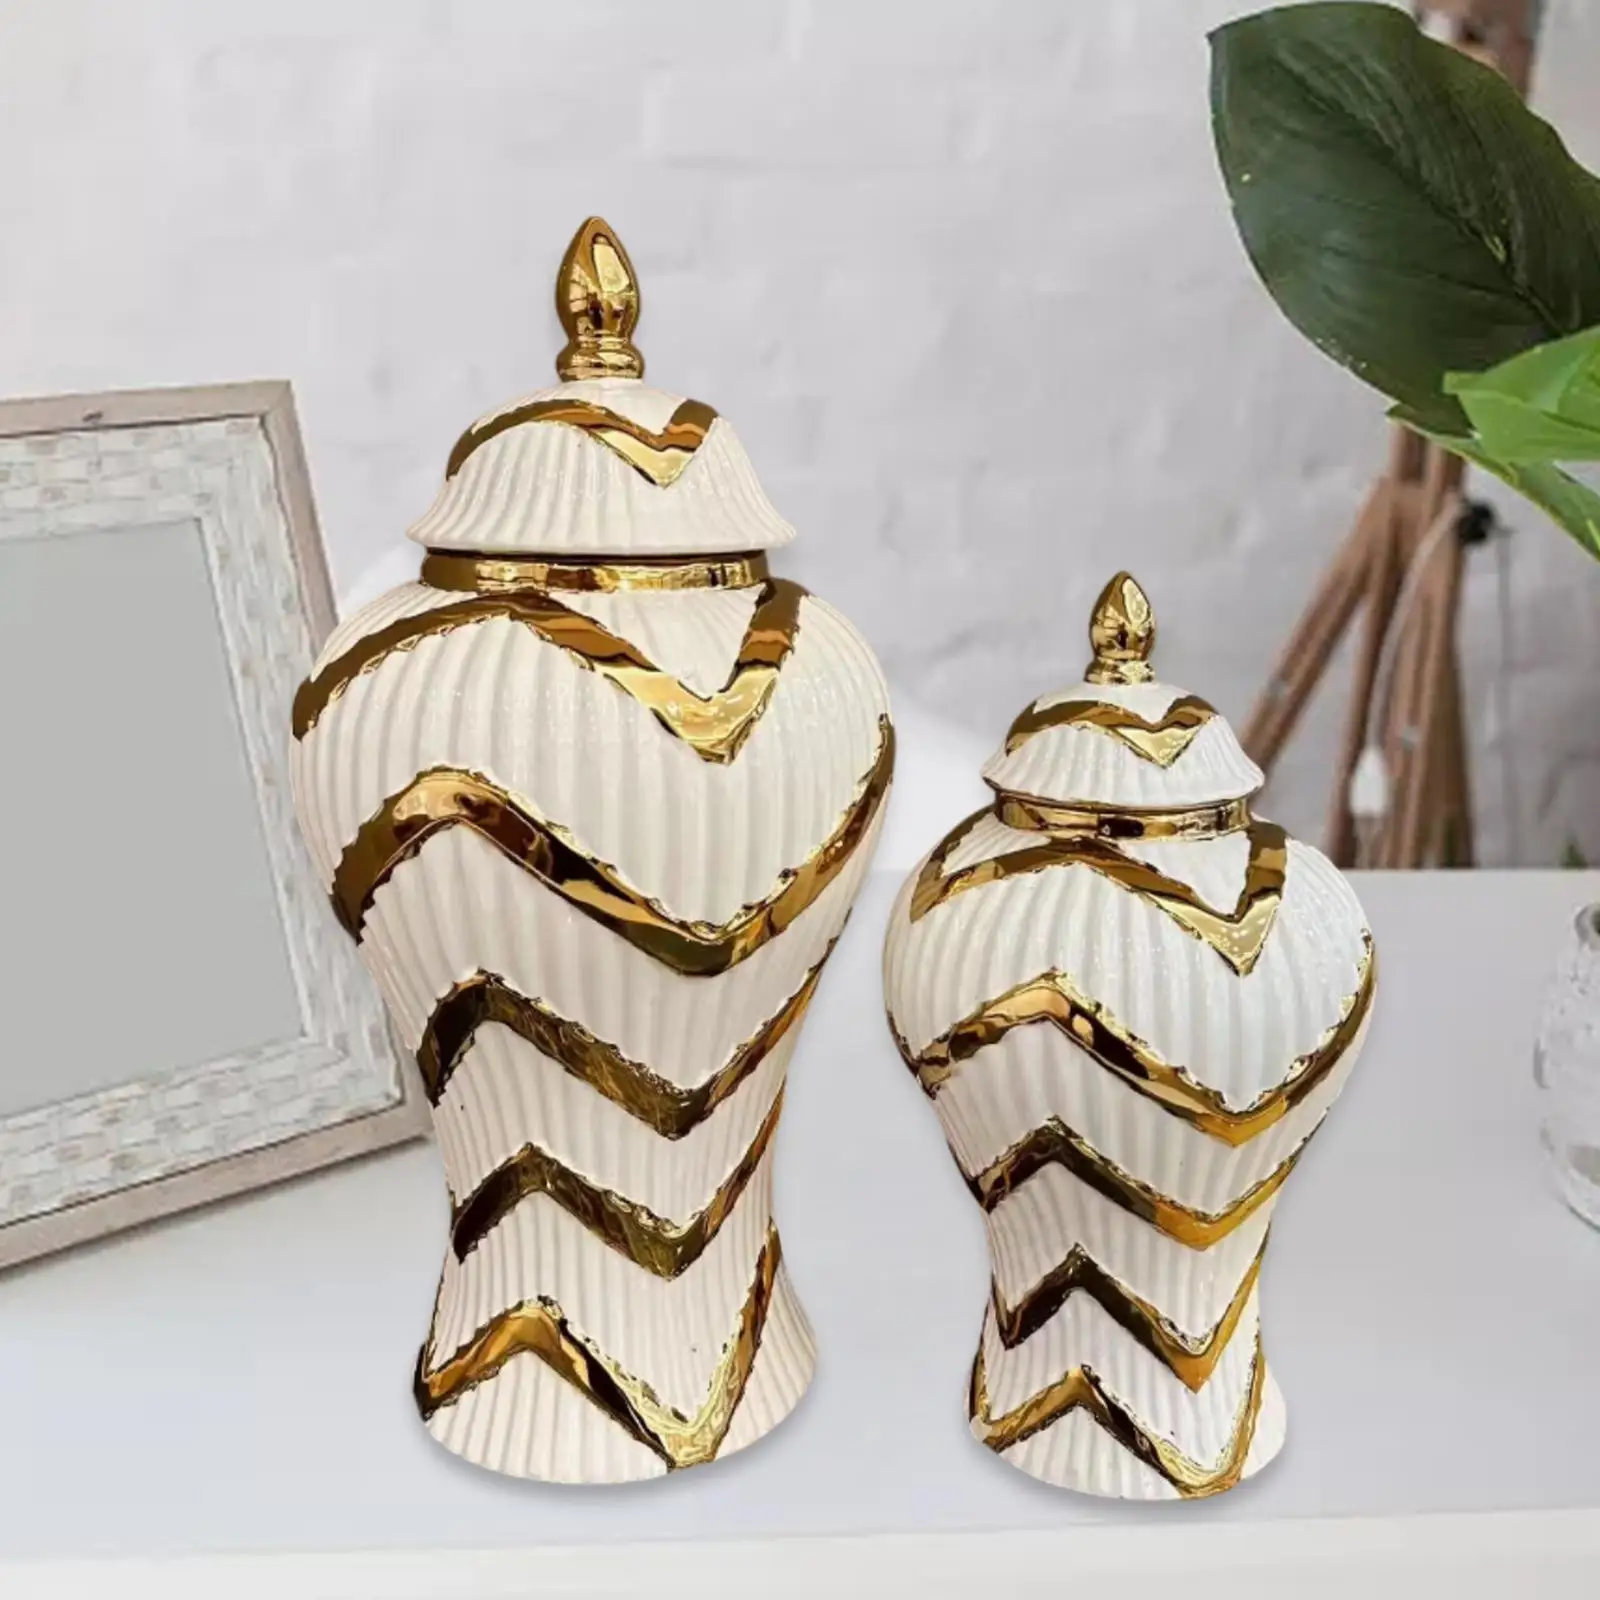 Ceramic Ginger Jar Flower Vase with Geometric Lines Temple Jar Versatile Table Floral Arrangement Living Room Decor Handmade